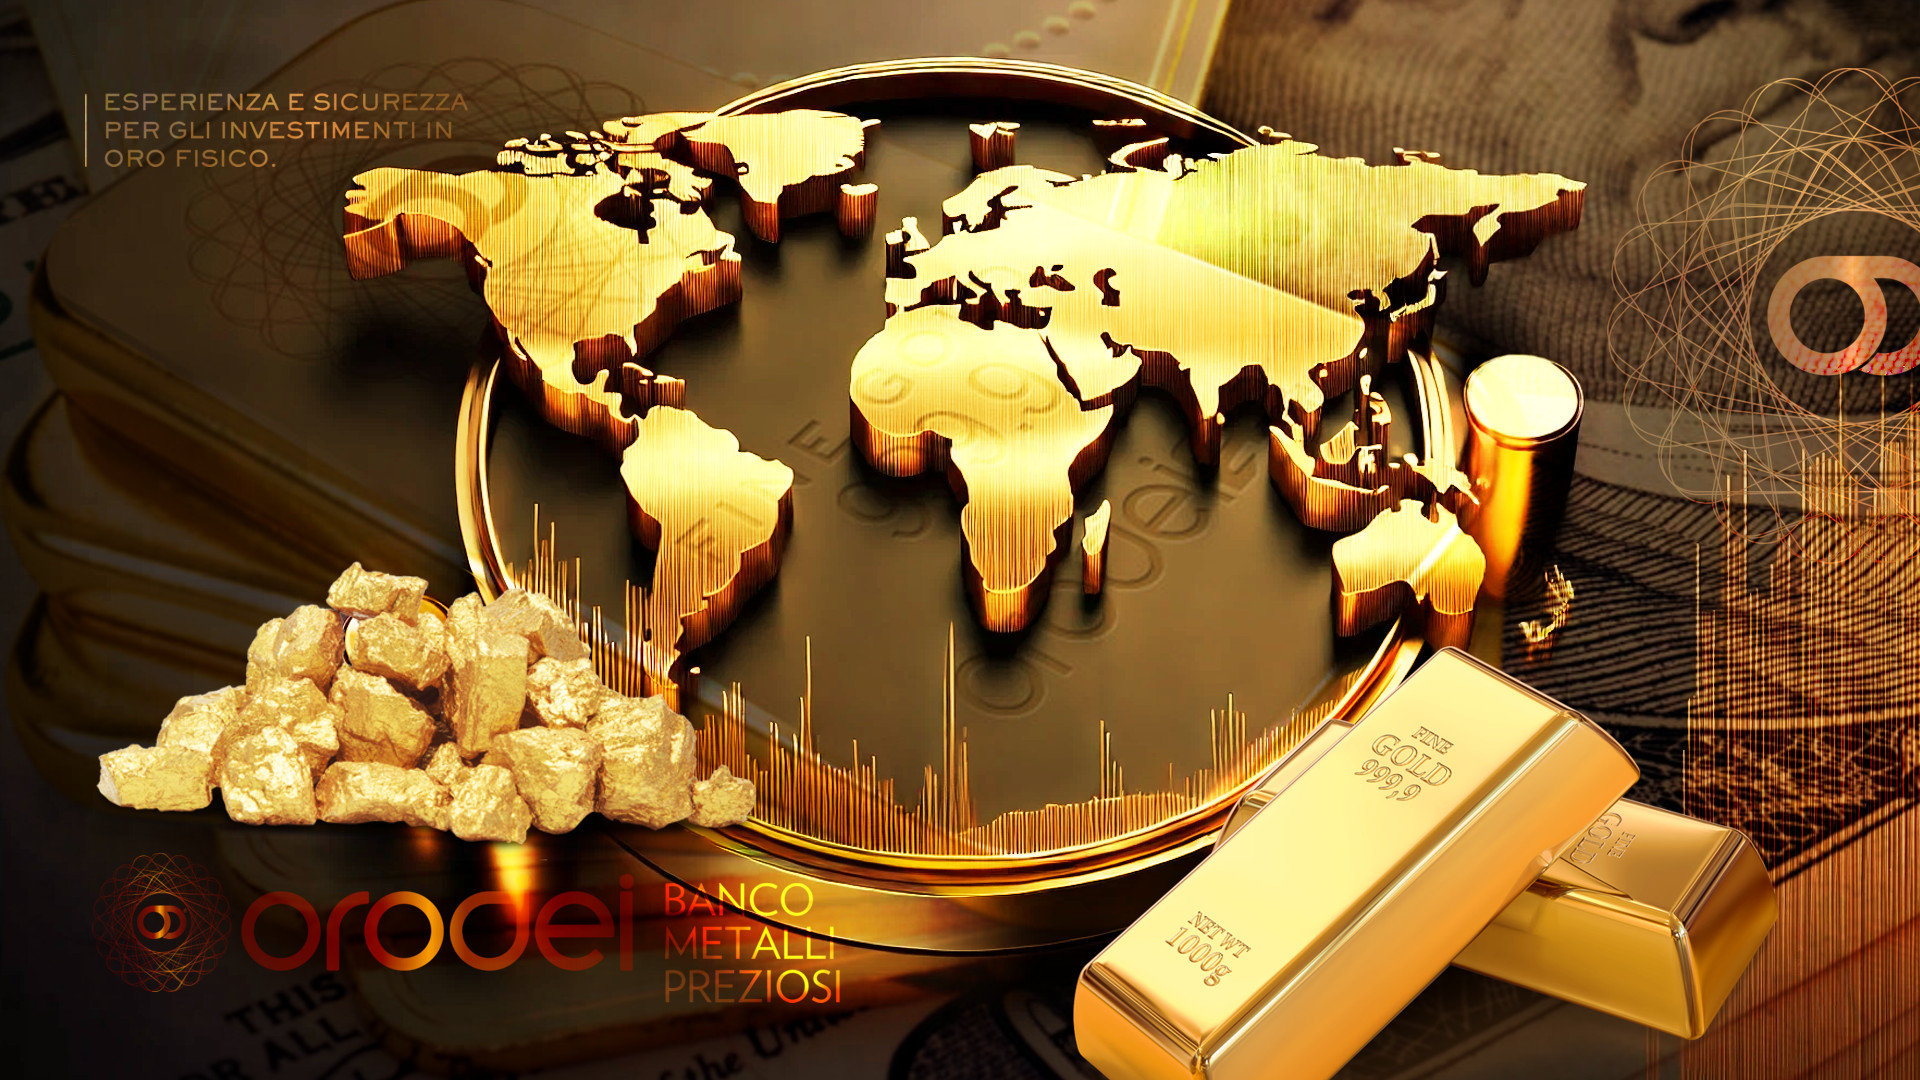 Orodei Banco Metalli Preziosi: Le Economie Avanzate intendono acquistare più Oro nonostante il Prezzo Record